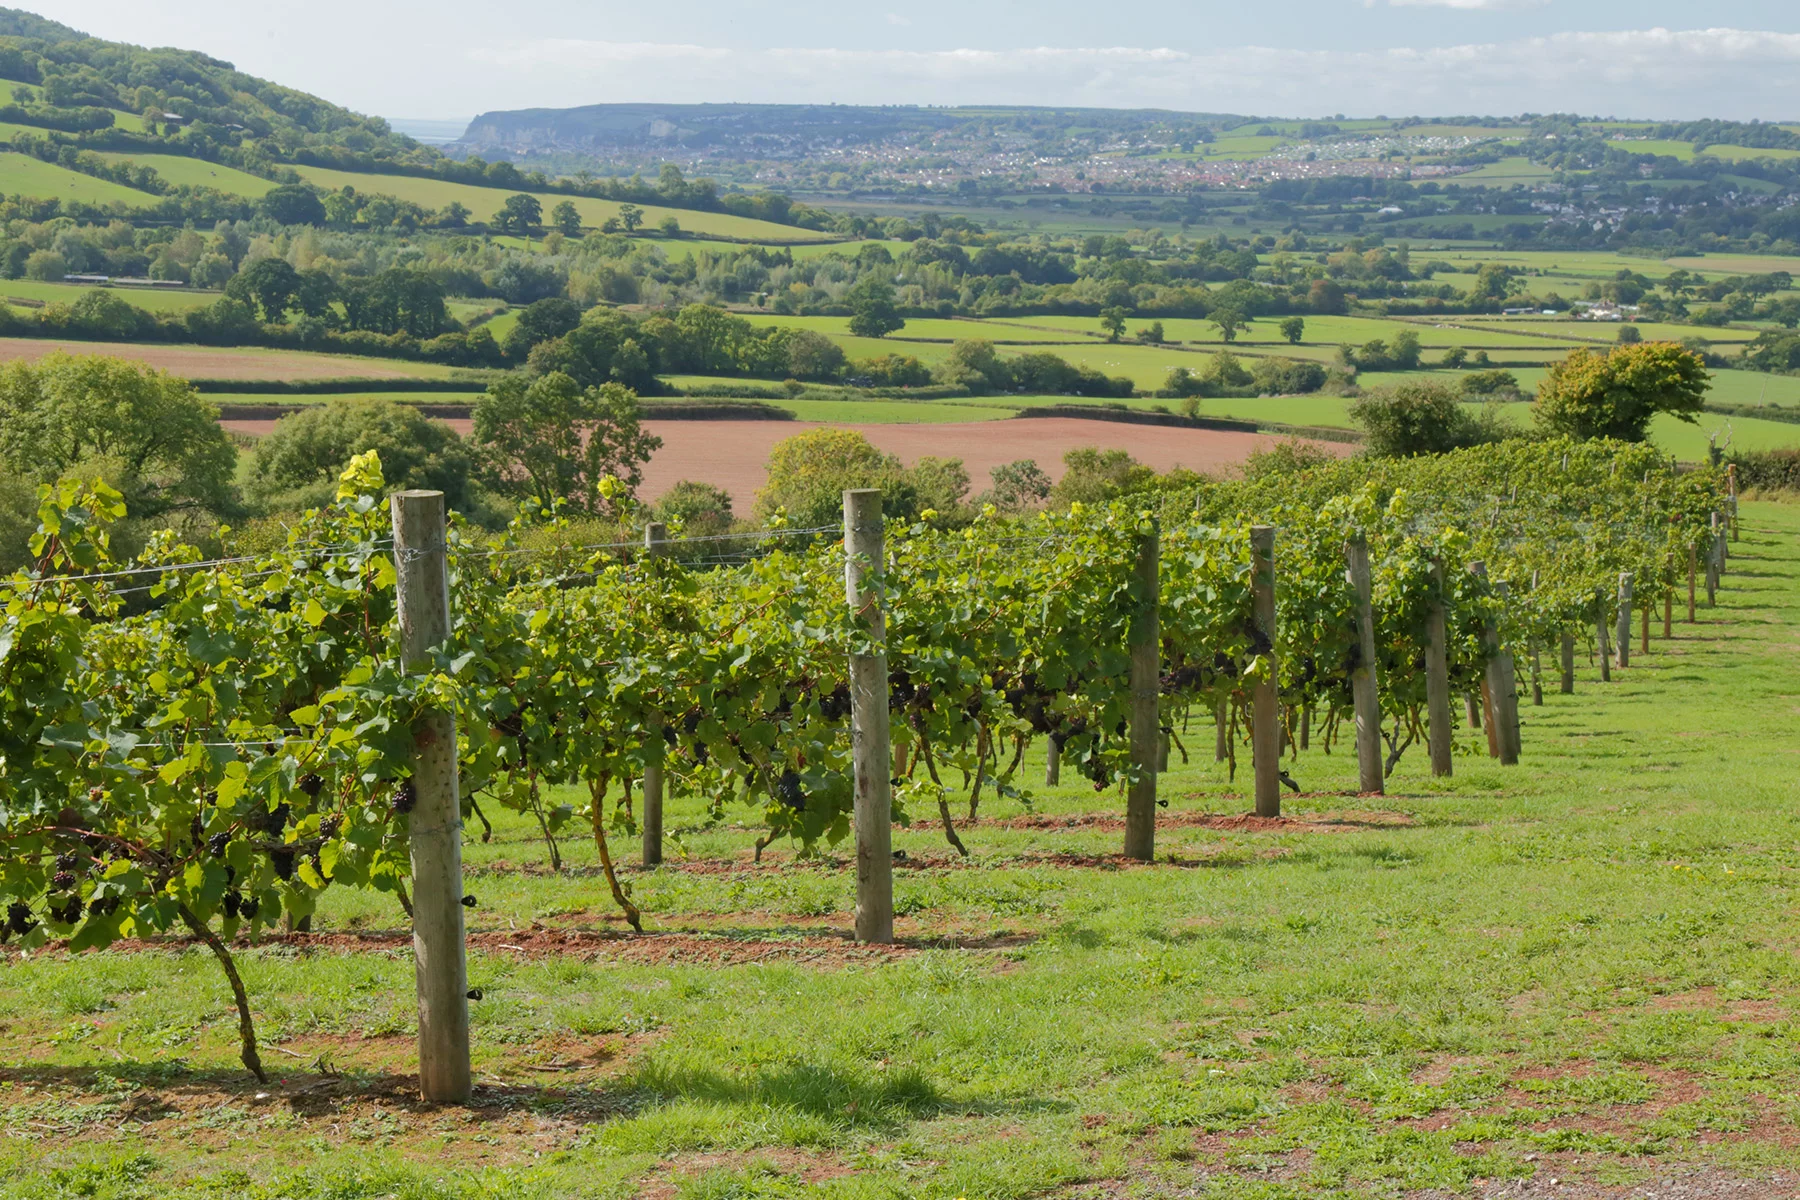 A vineyard in Devon